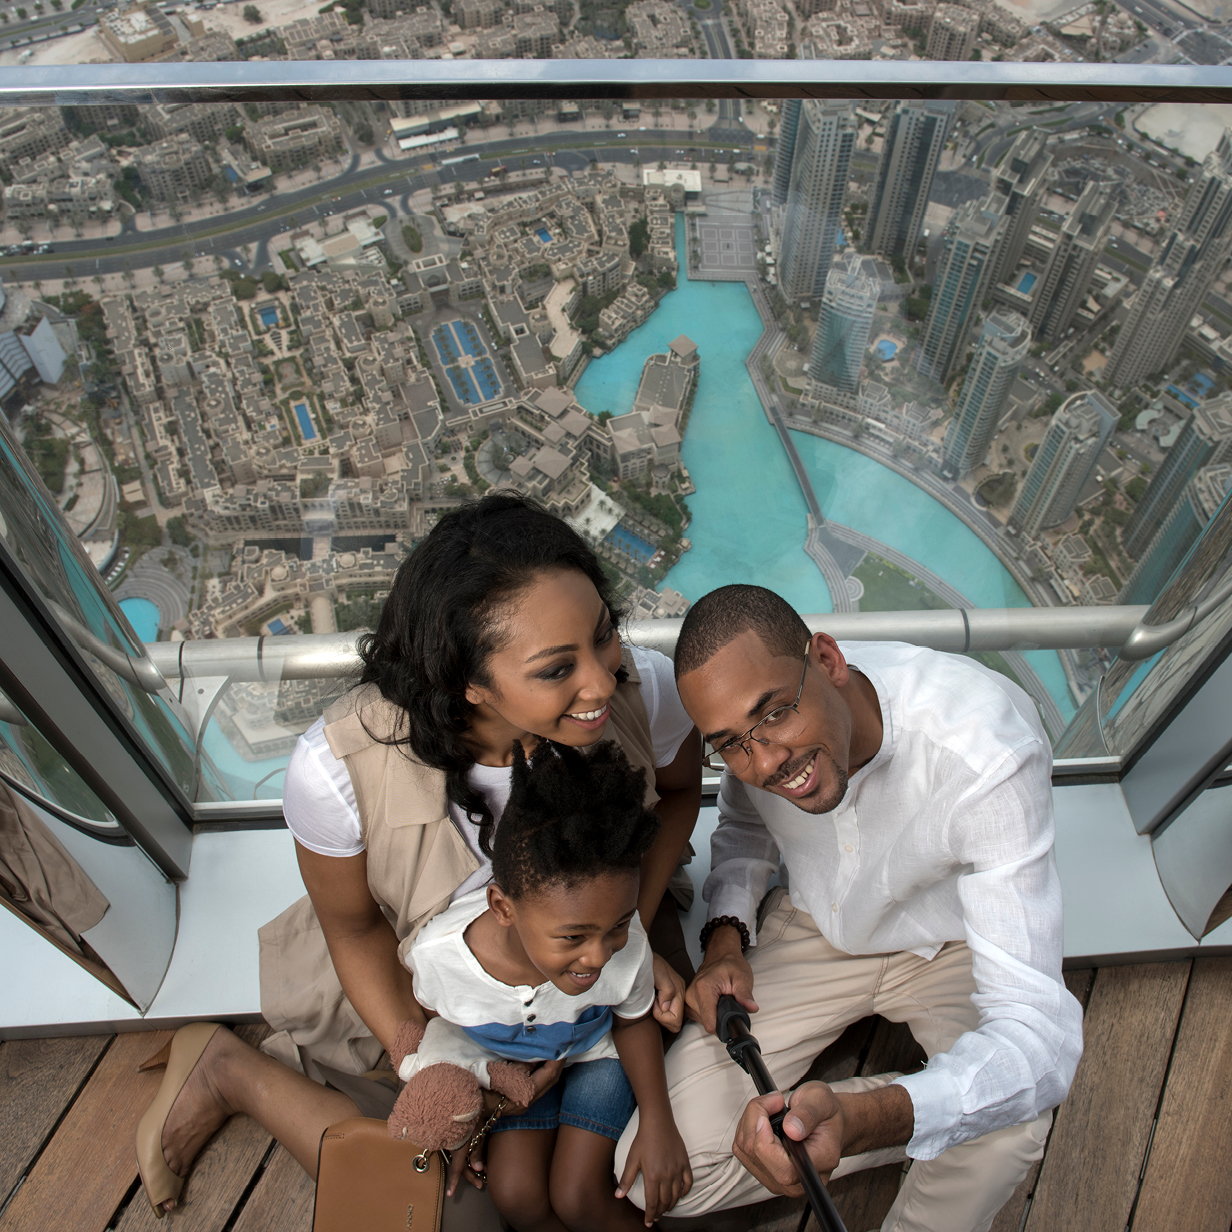 At The Top Burj Khalifa deals